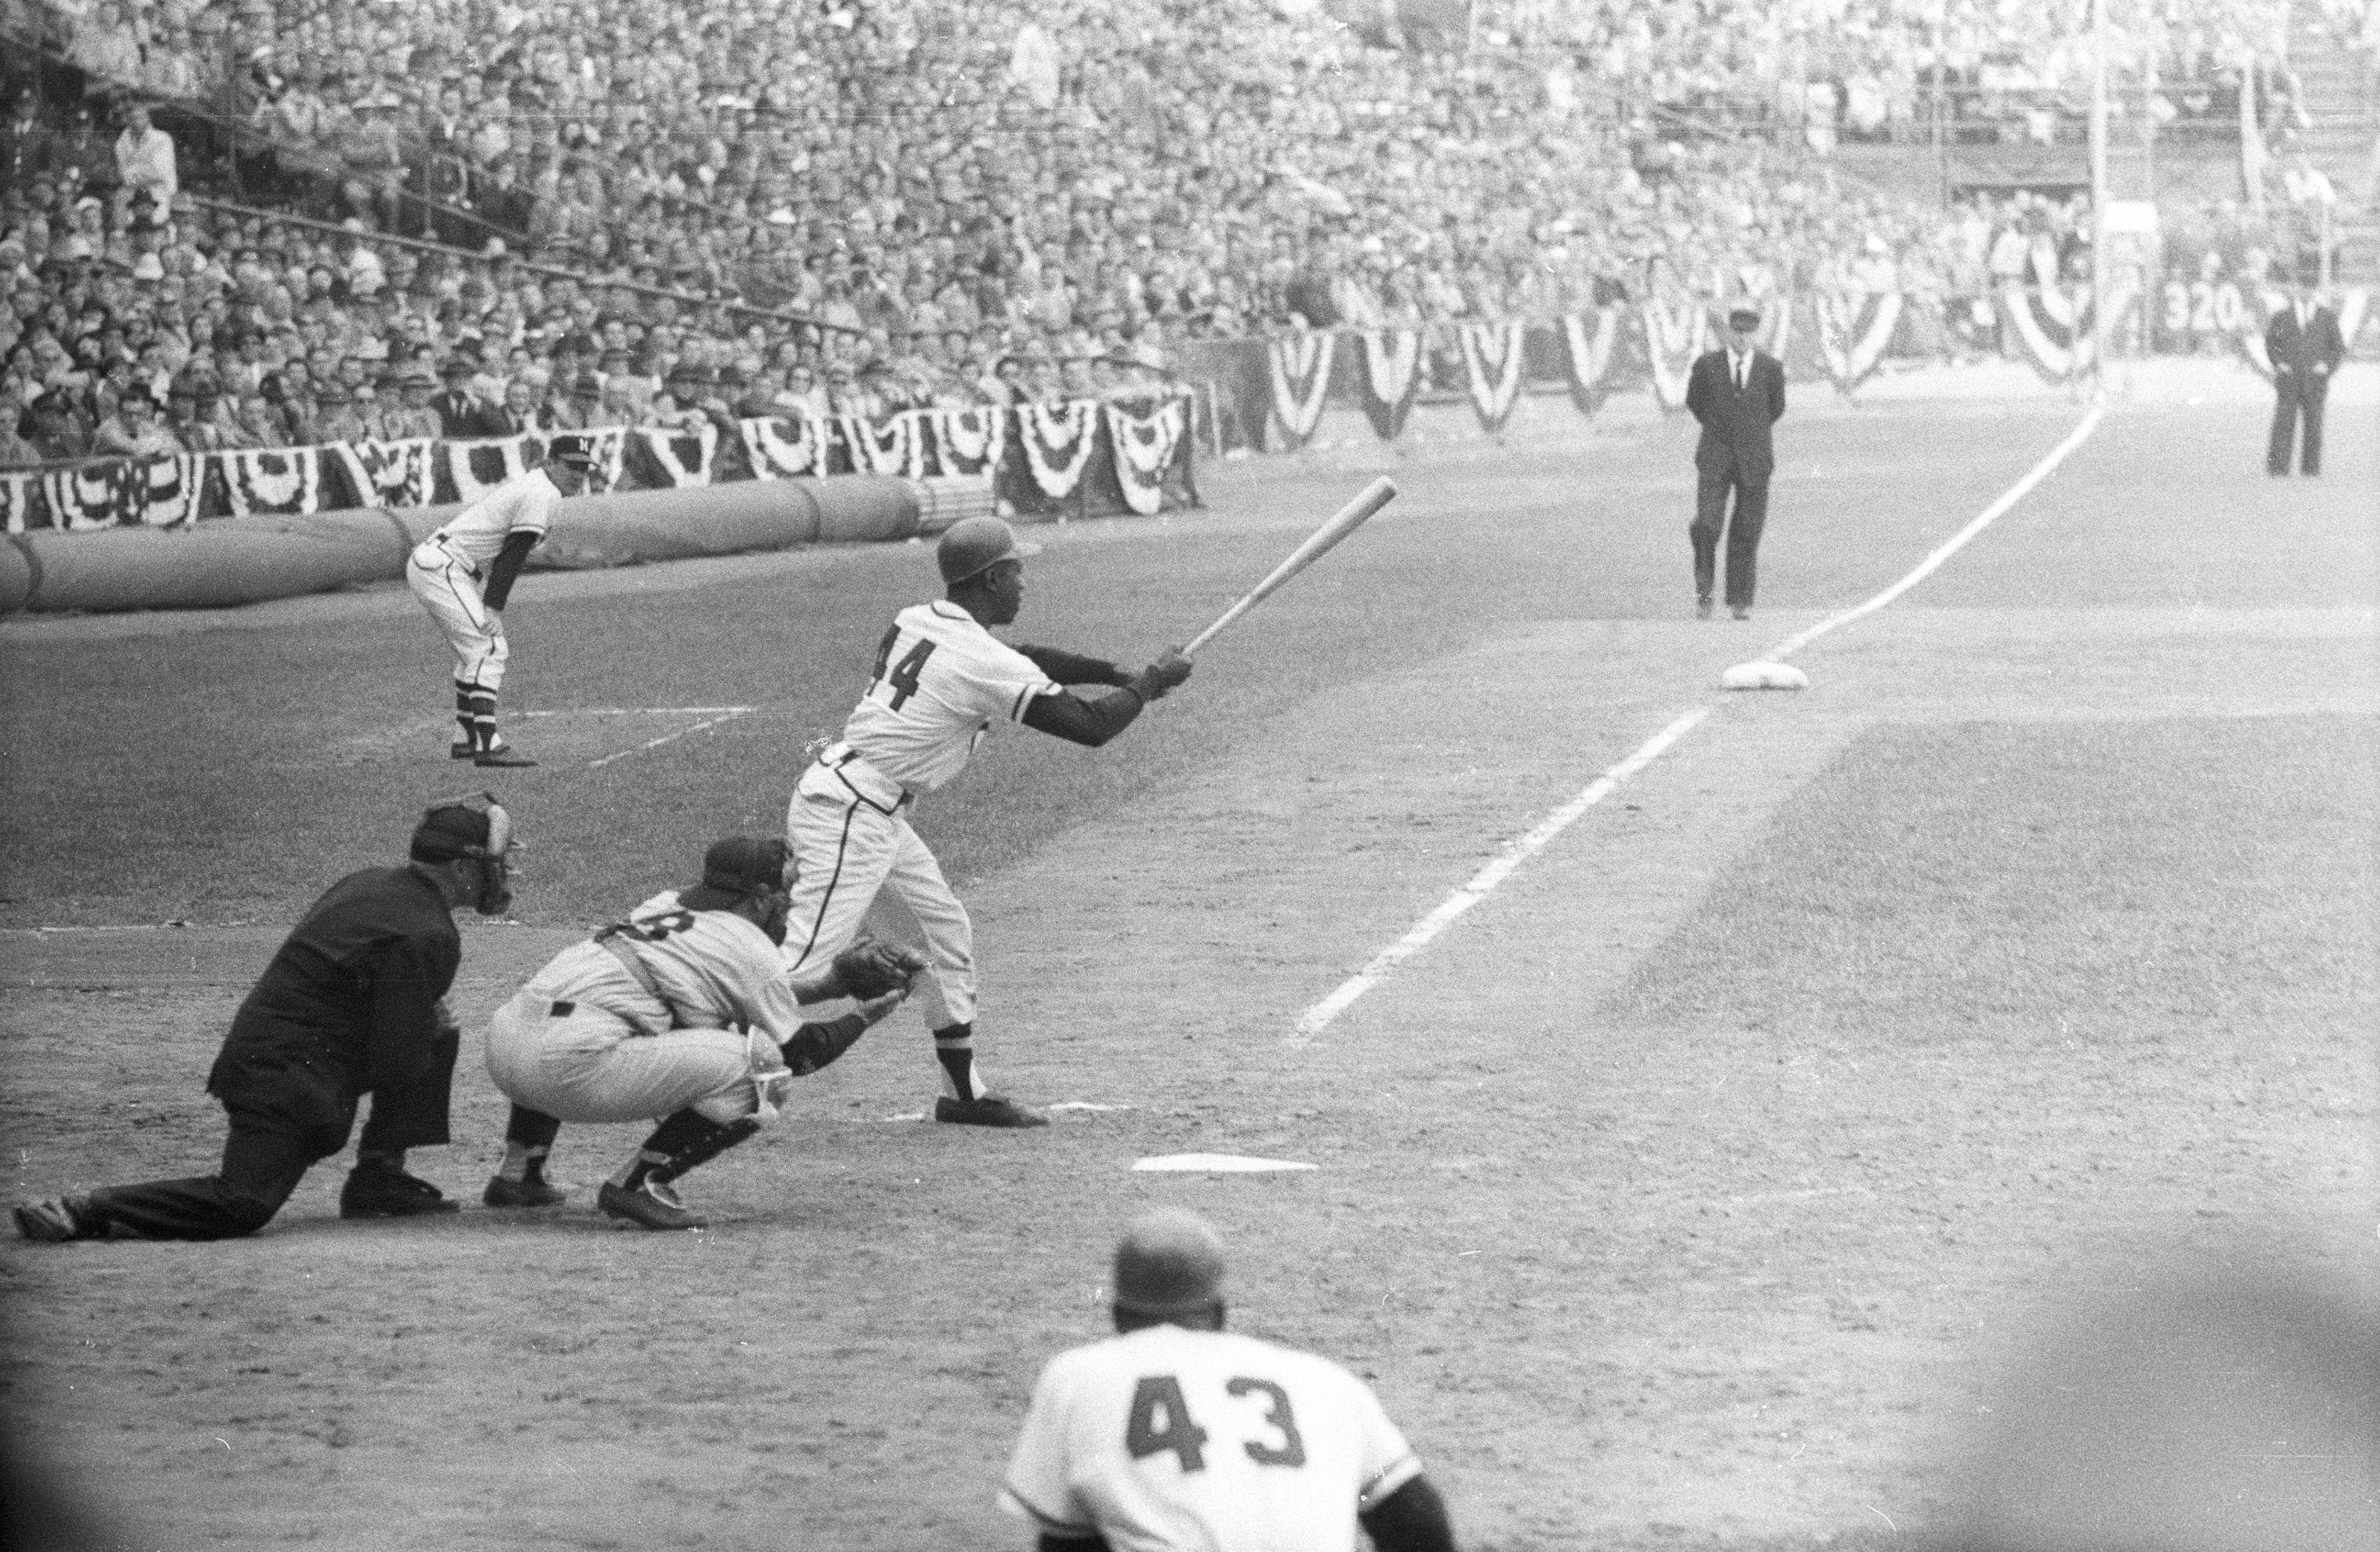 Milwaukee Braves vs New York Yankees, 1957 World Series